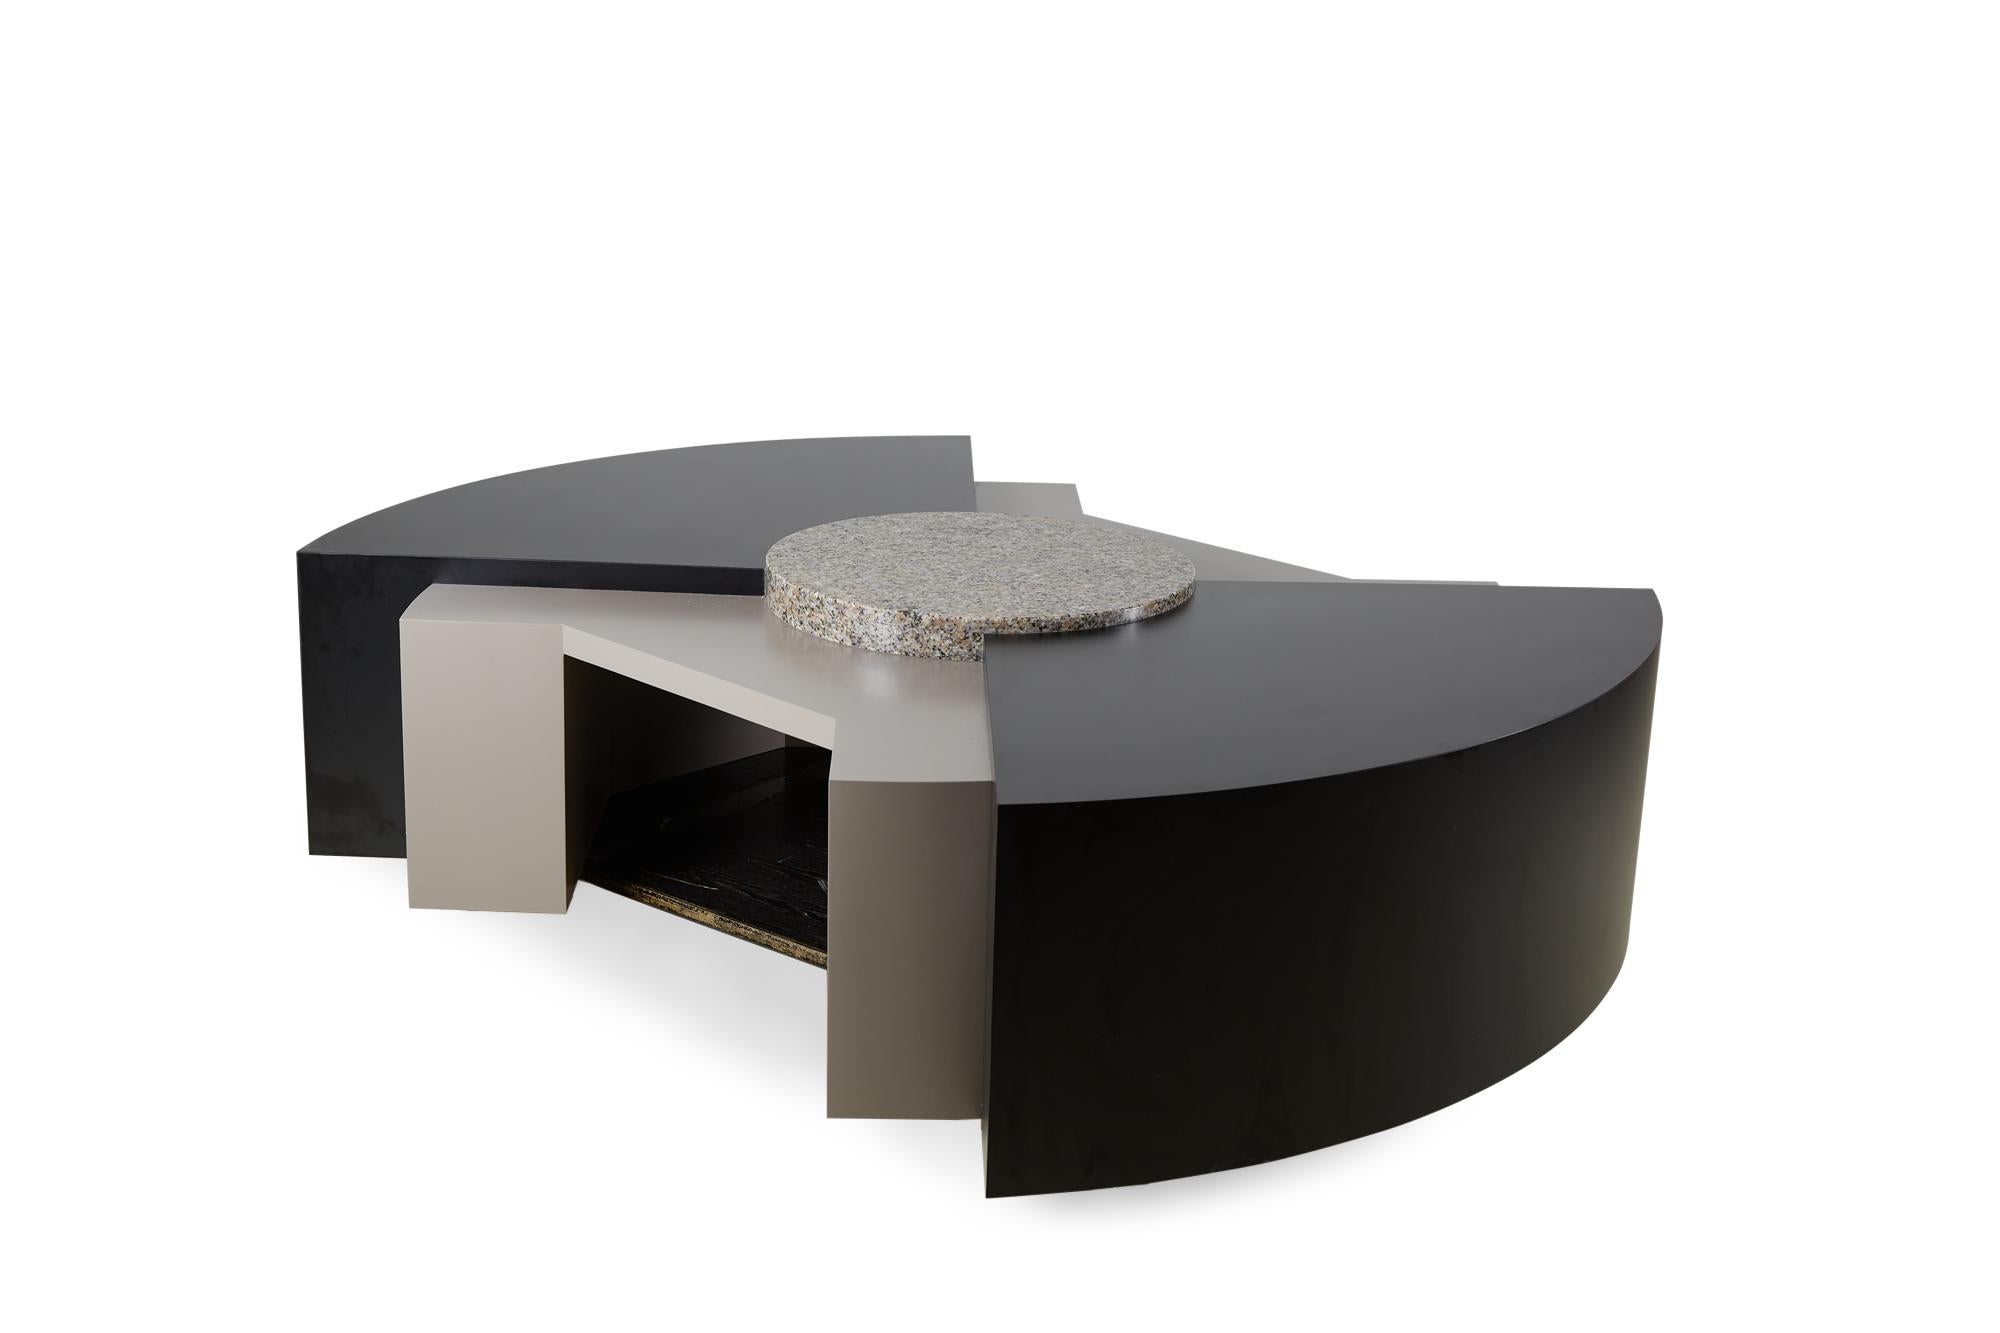 Table basse / cocktail post-moderne américaine (circa 1980) sur mesure avec une structure architecturale à plusieurs niveaux en stratifié mica noir et gris avec un disque central en granit. (STANLEY TIGERMAN ET MARGARET MCCURRY)